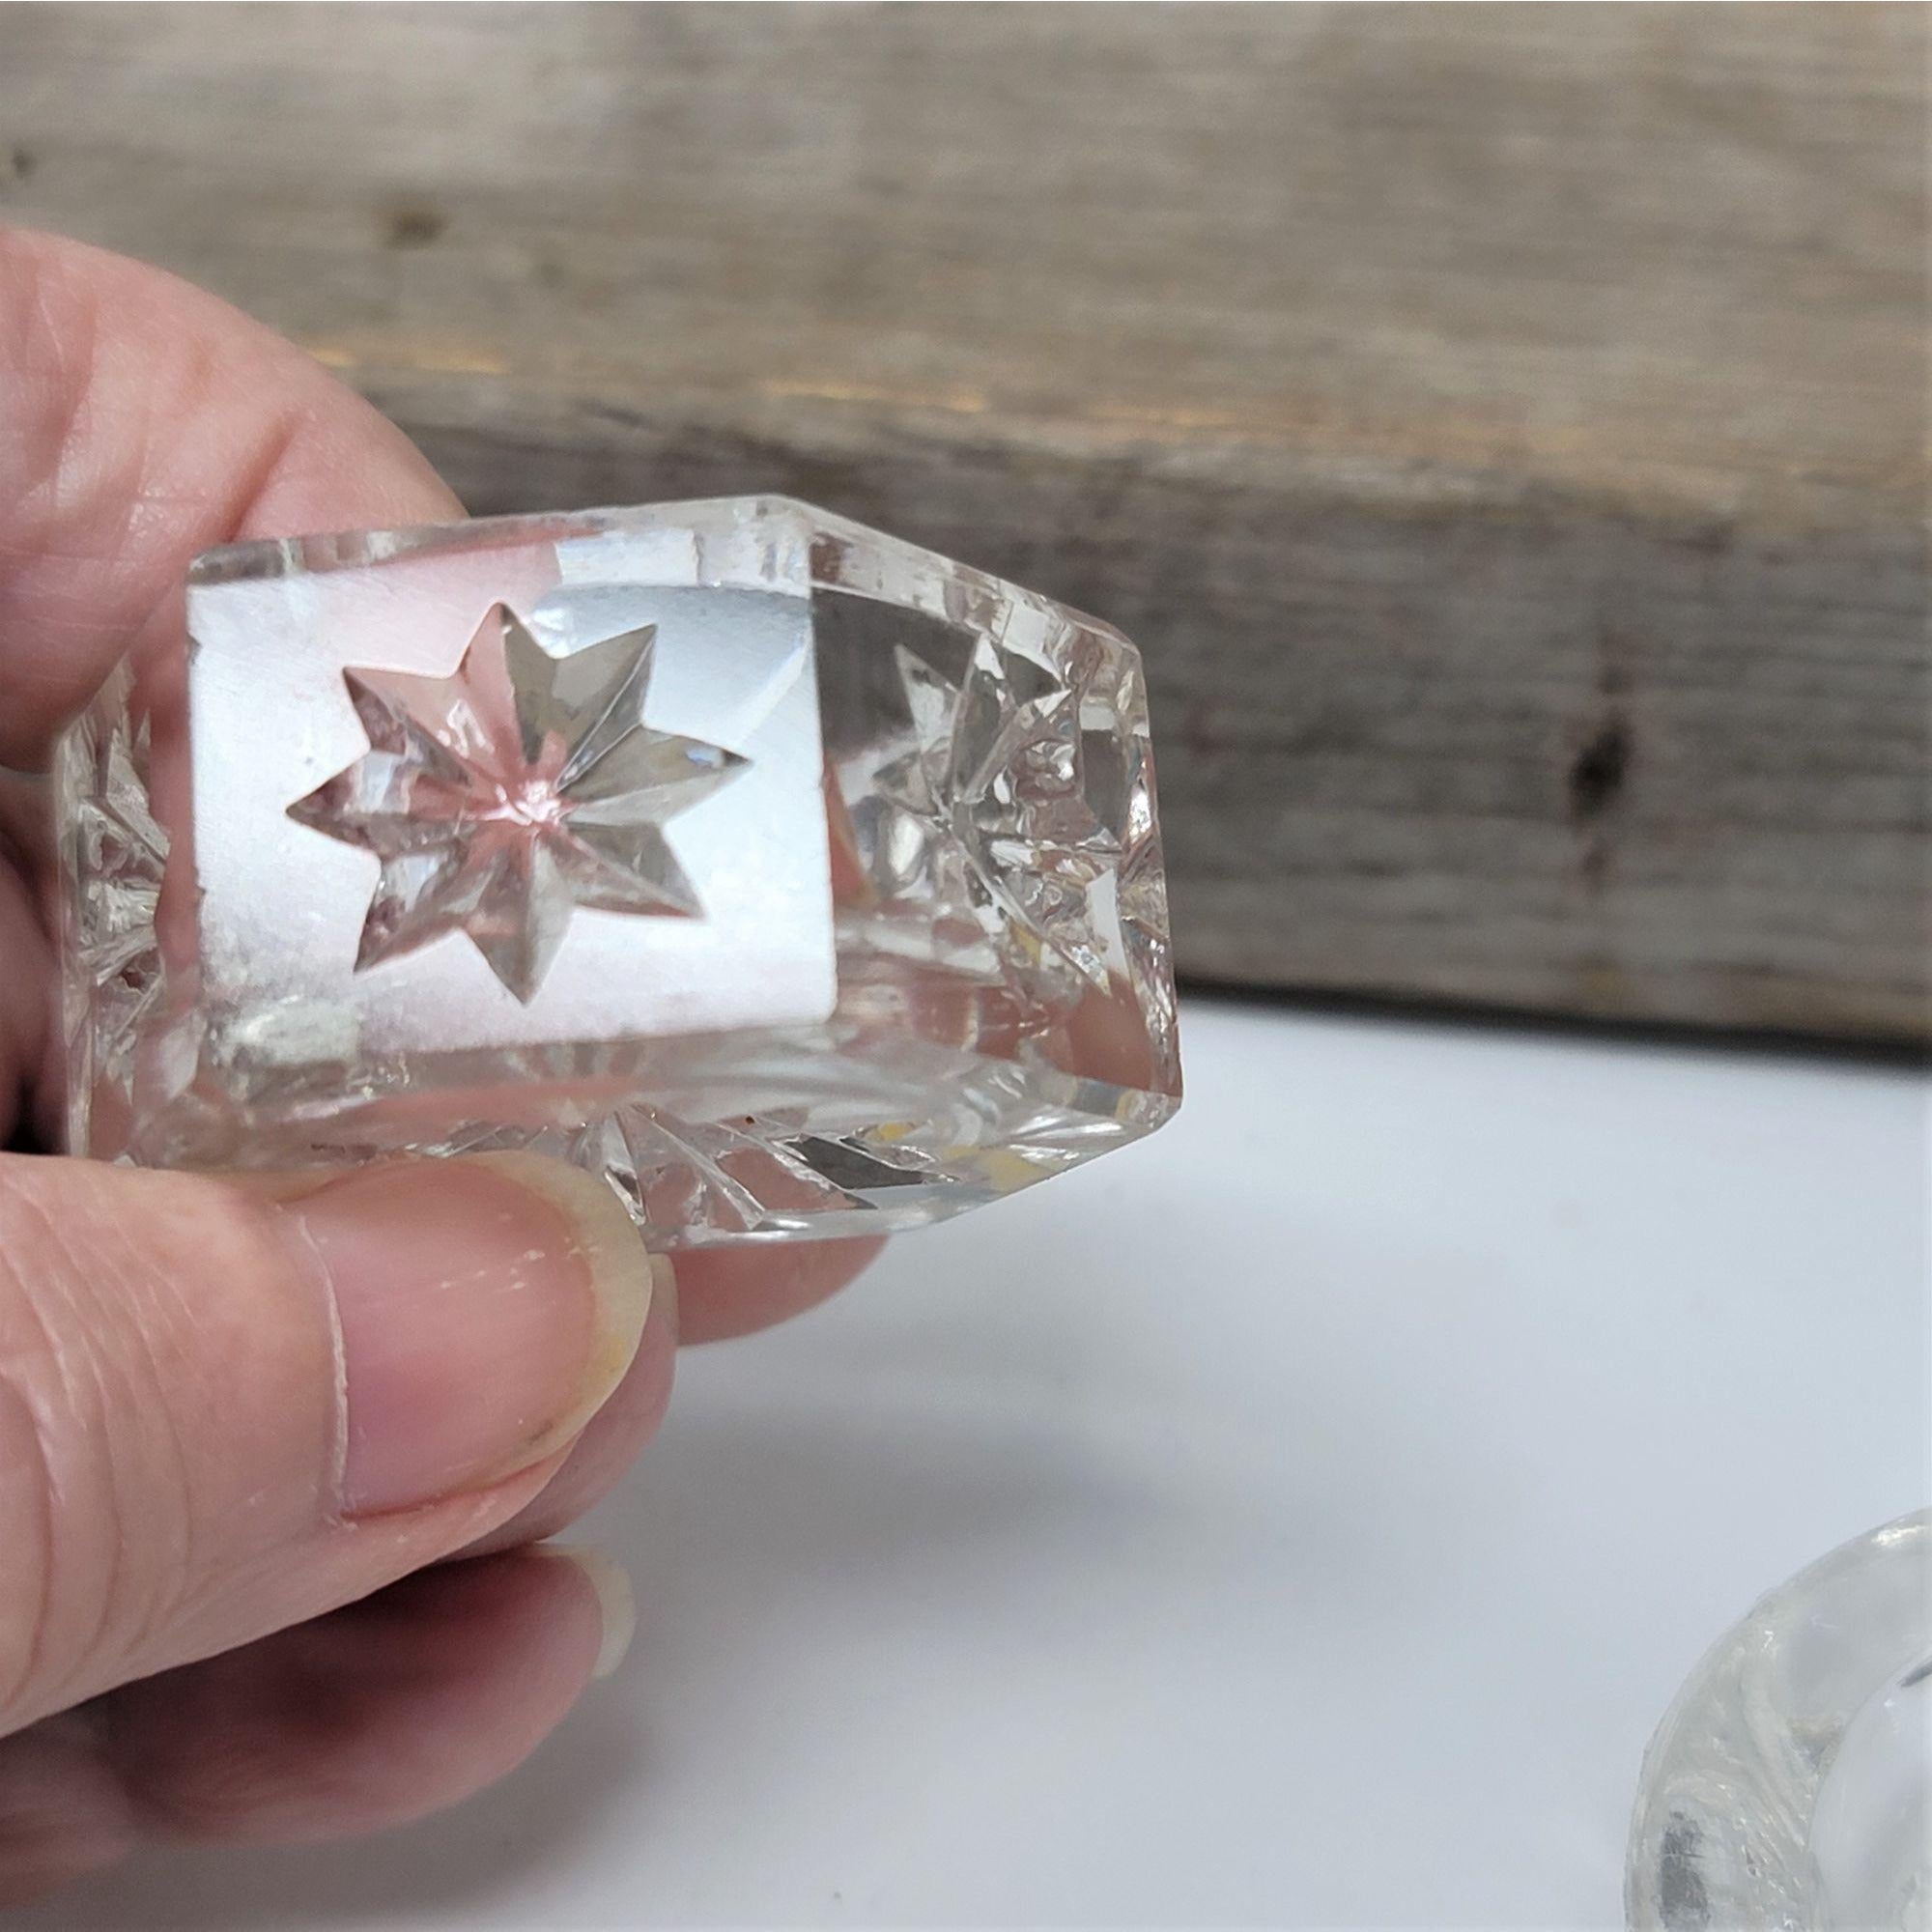 Vintage Salt Dishes Cellars Crystal Clear Detailed Design